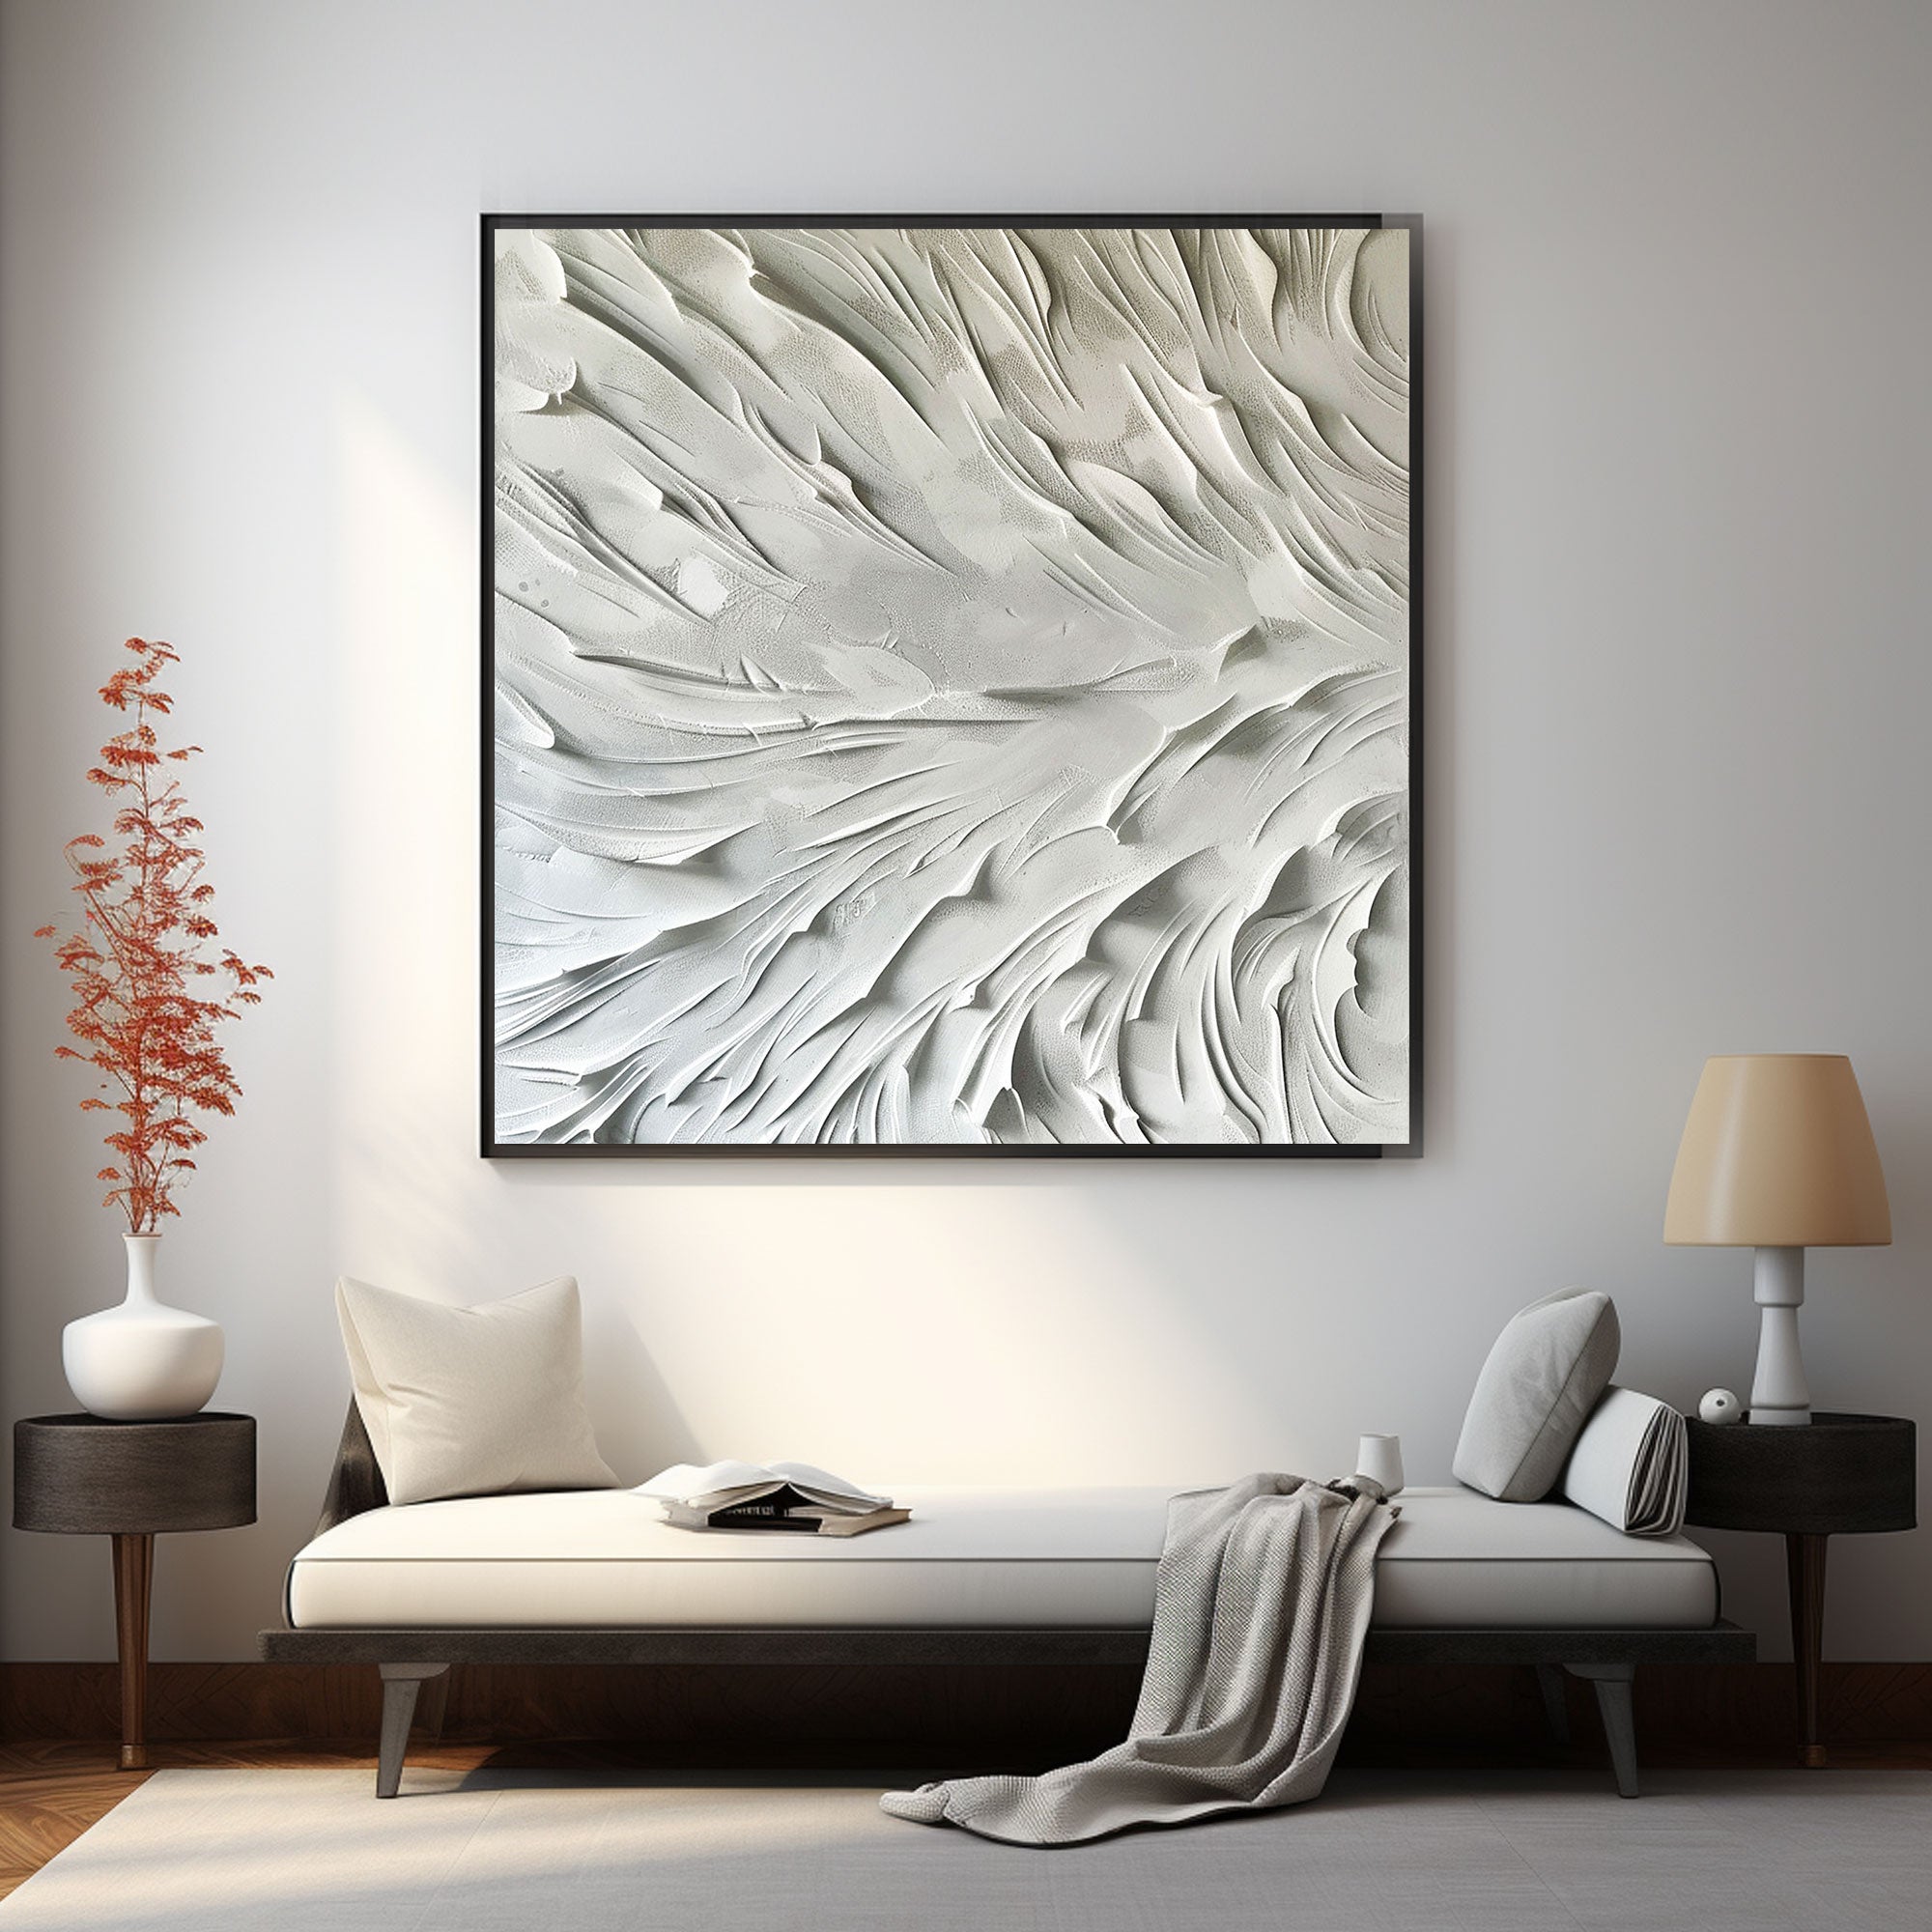 Arte abstracto Pintura en blanco y negro "Olas susurrantes de serenidad" 